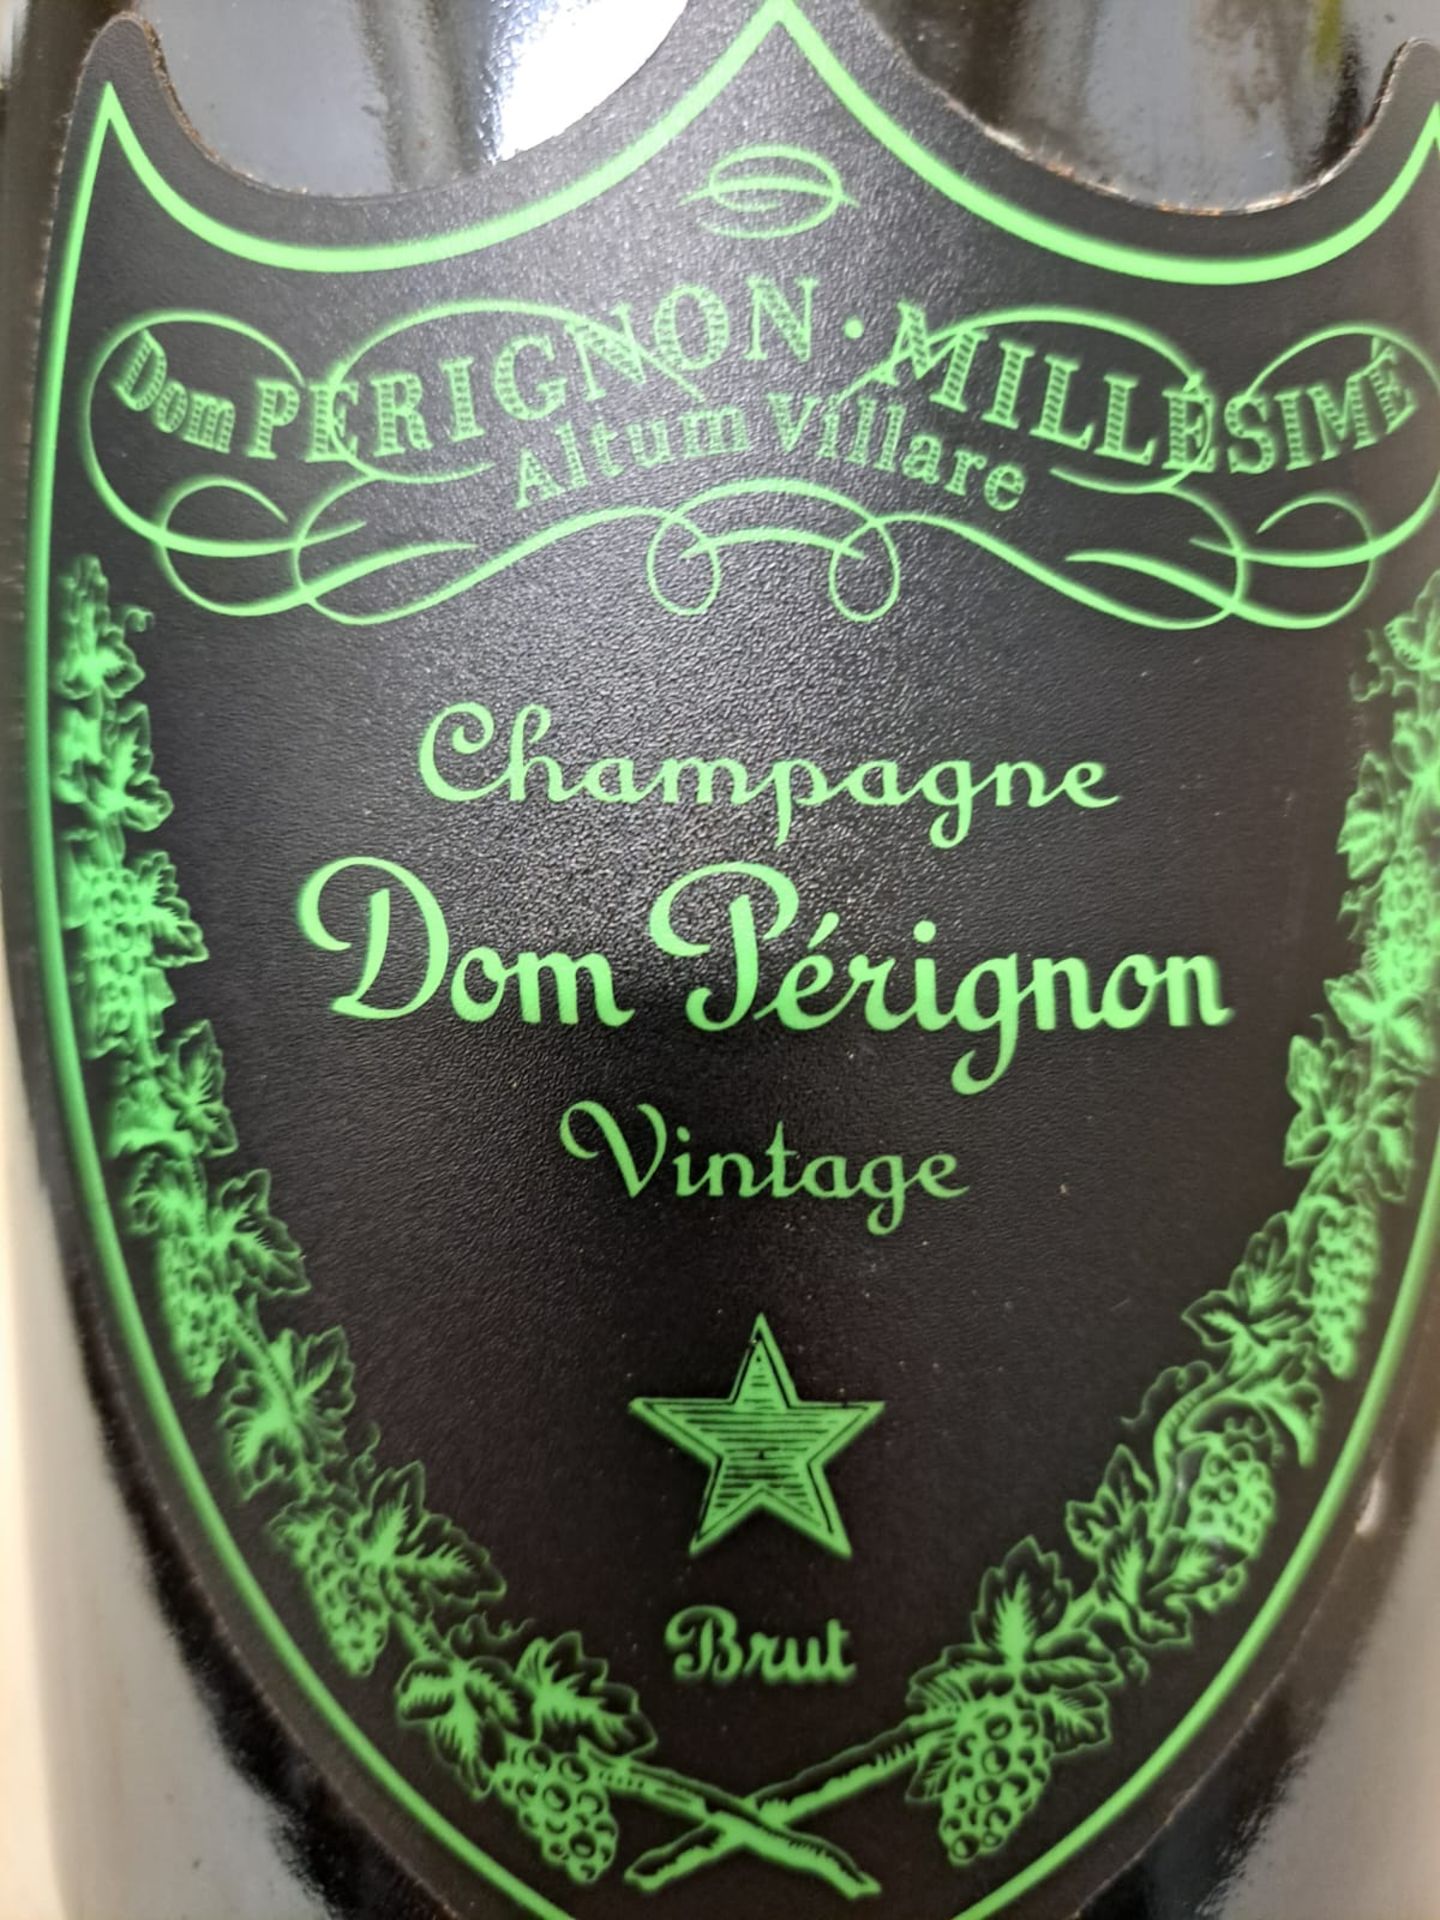 1 x Magnum of 2009 Dom Perignon Millesime Champagne Vintage Brut Luminous Label - Retail Price £ - Image 2 of 5